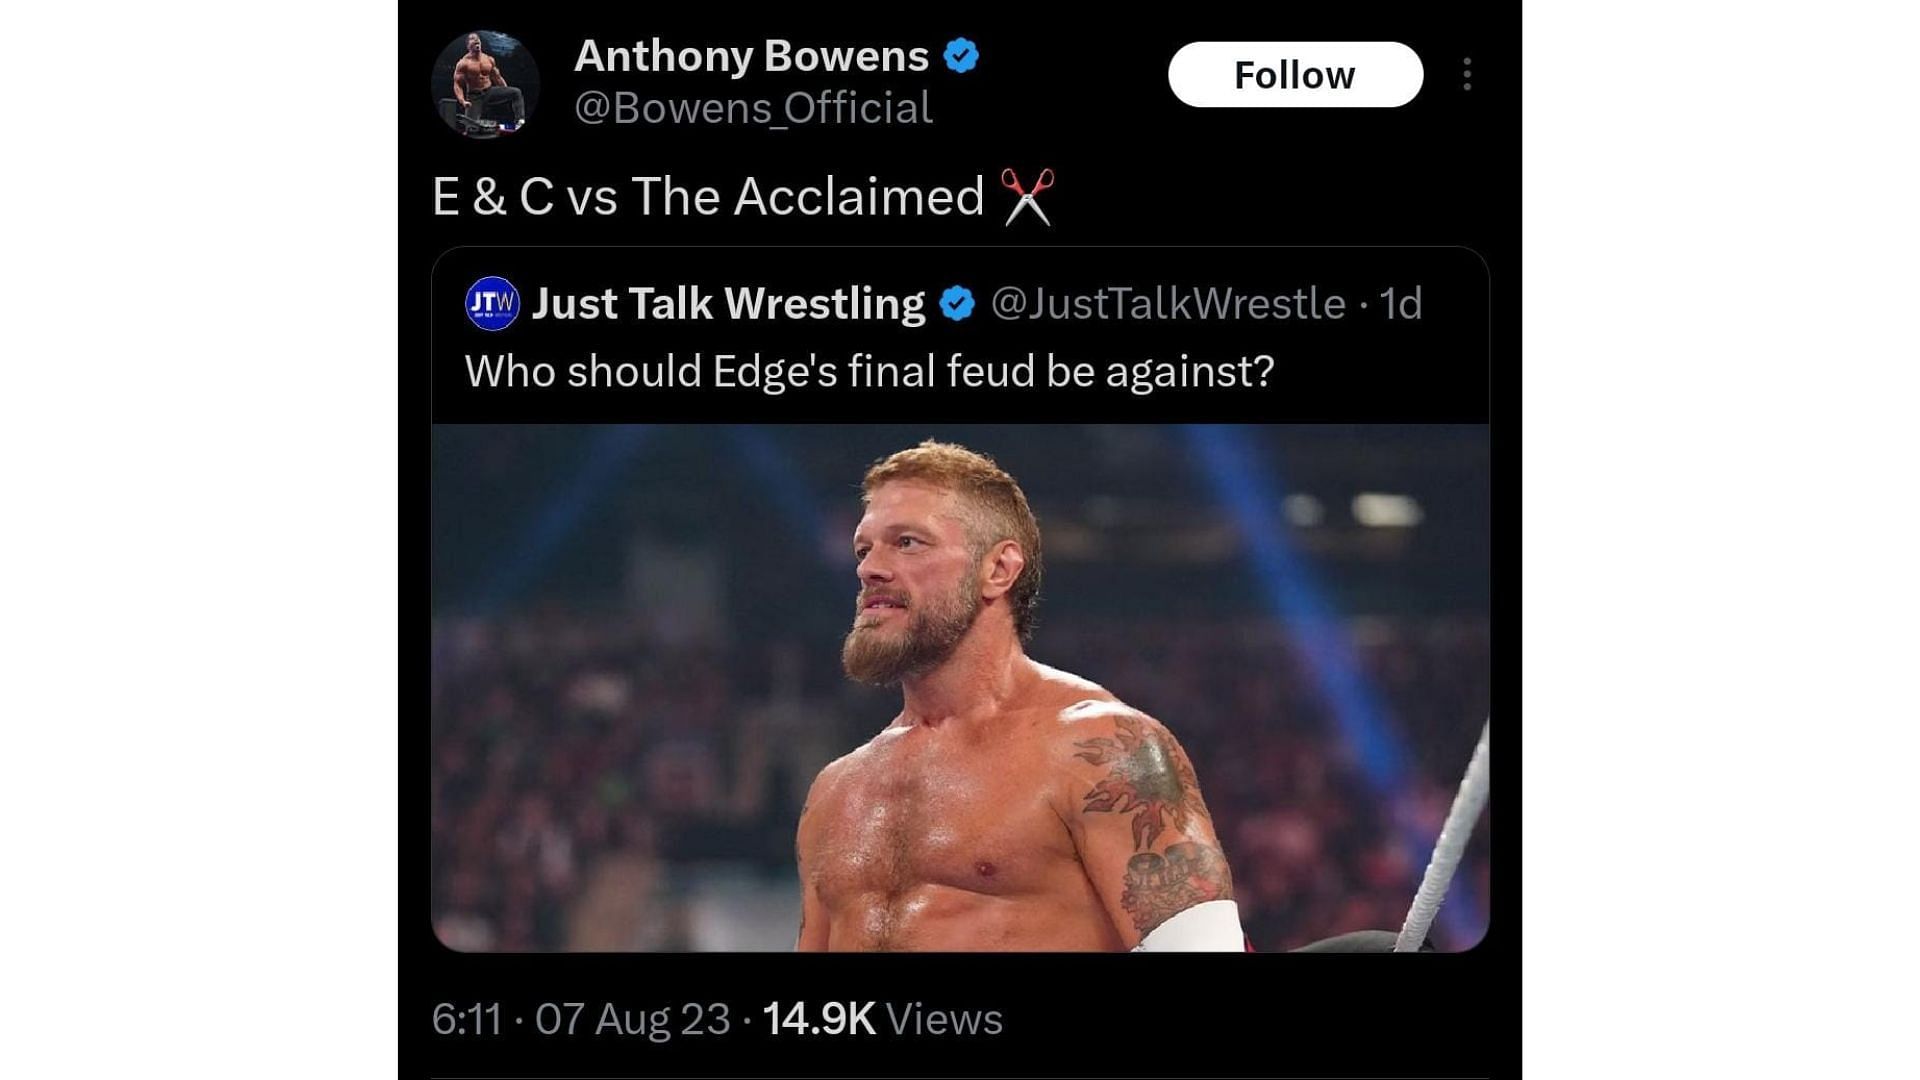 AEW star Anthony Bowens latest tweet